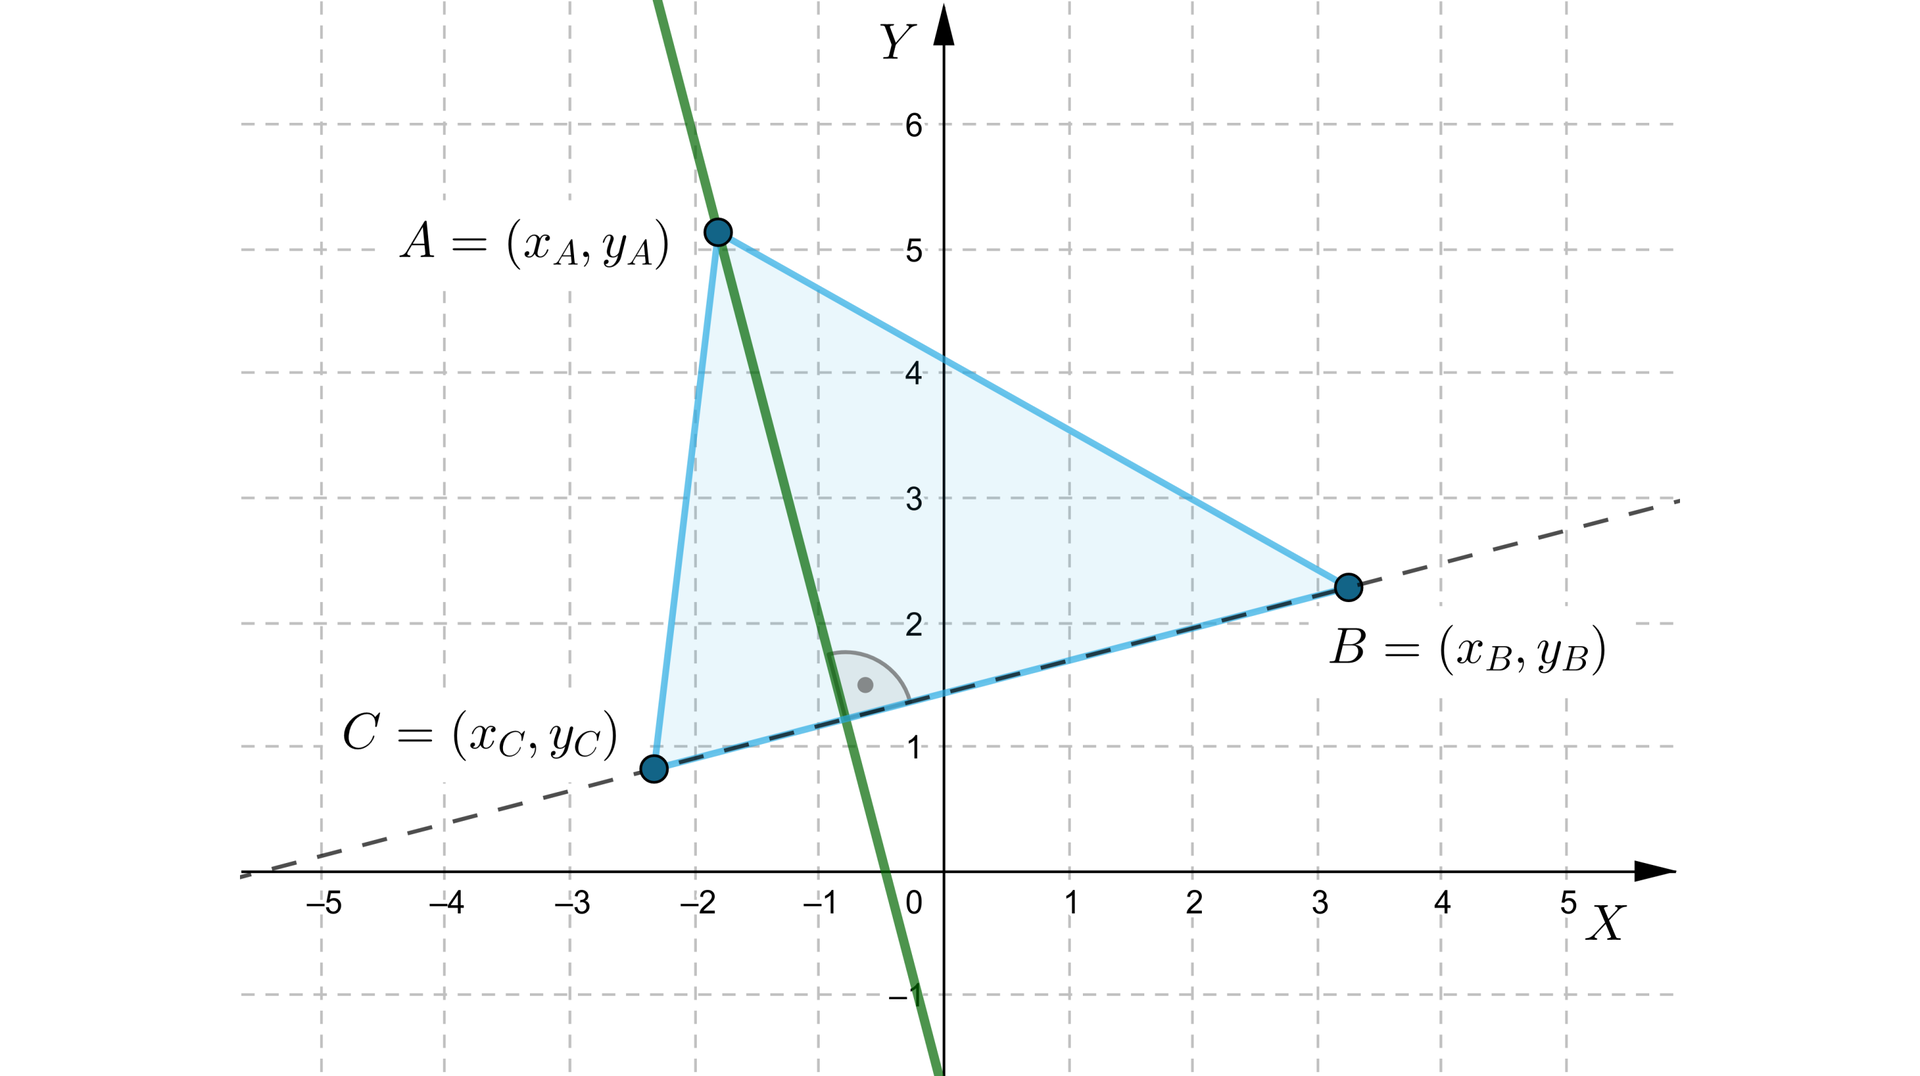 Ilustracja przedstawia układ współrzędnych z poziomą osią X od -5 do pięć oraz z pionową osią Y od -1 do sześć. W pierwszej i drugiej ćwiartce zaznaczono trzy punkty: A=xA;yA, B=xB;yB, C=xC;yC. Połączono ze sobą punkty, tworząc trójkąt A B C. Przerywaną linią zaznaczono ukośną prostą, która przechodzi przez punkty B oraz C. Zaznaczono ukośną prostą, która pokrywa wysokość trójkąta upuszczoną na podstawę B C i przechodzącą przez punkt A.